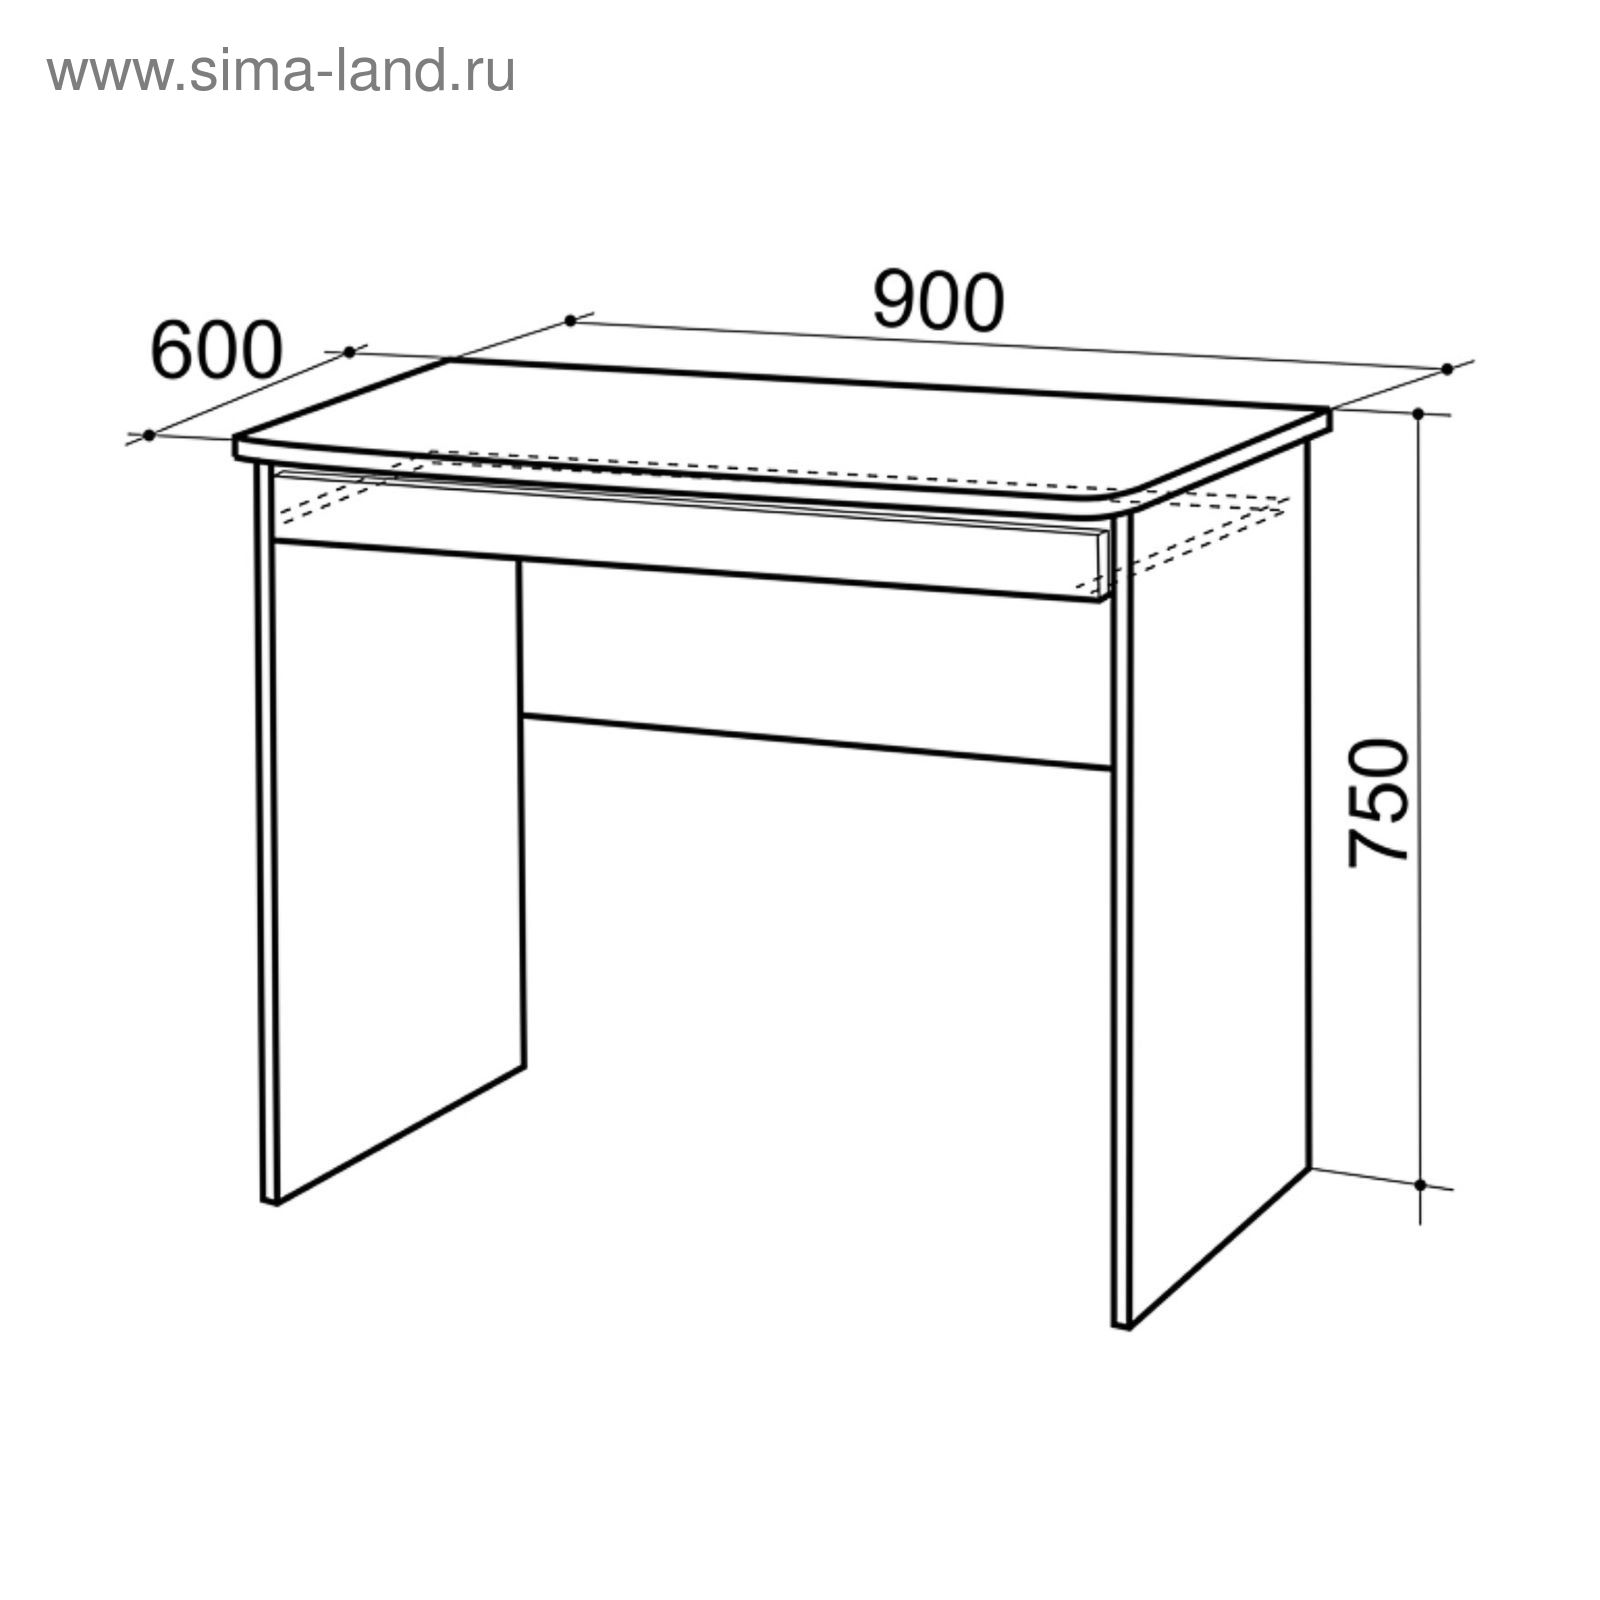 Удобная ширина компьютерного стола